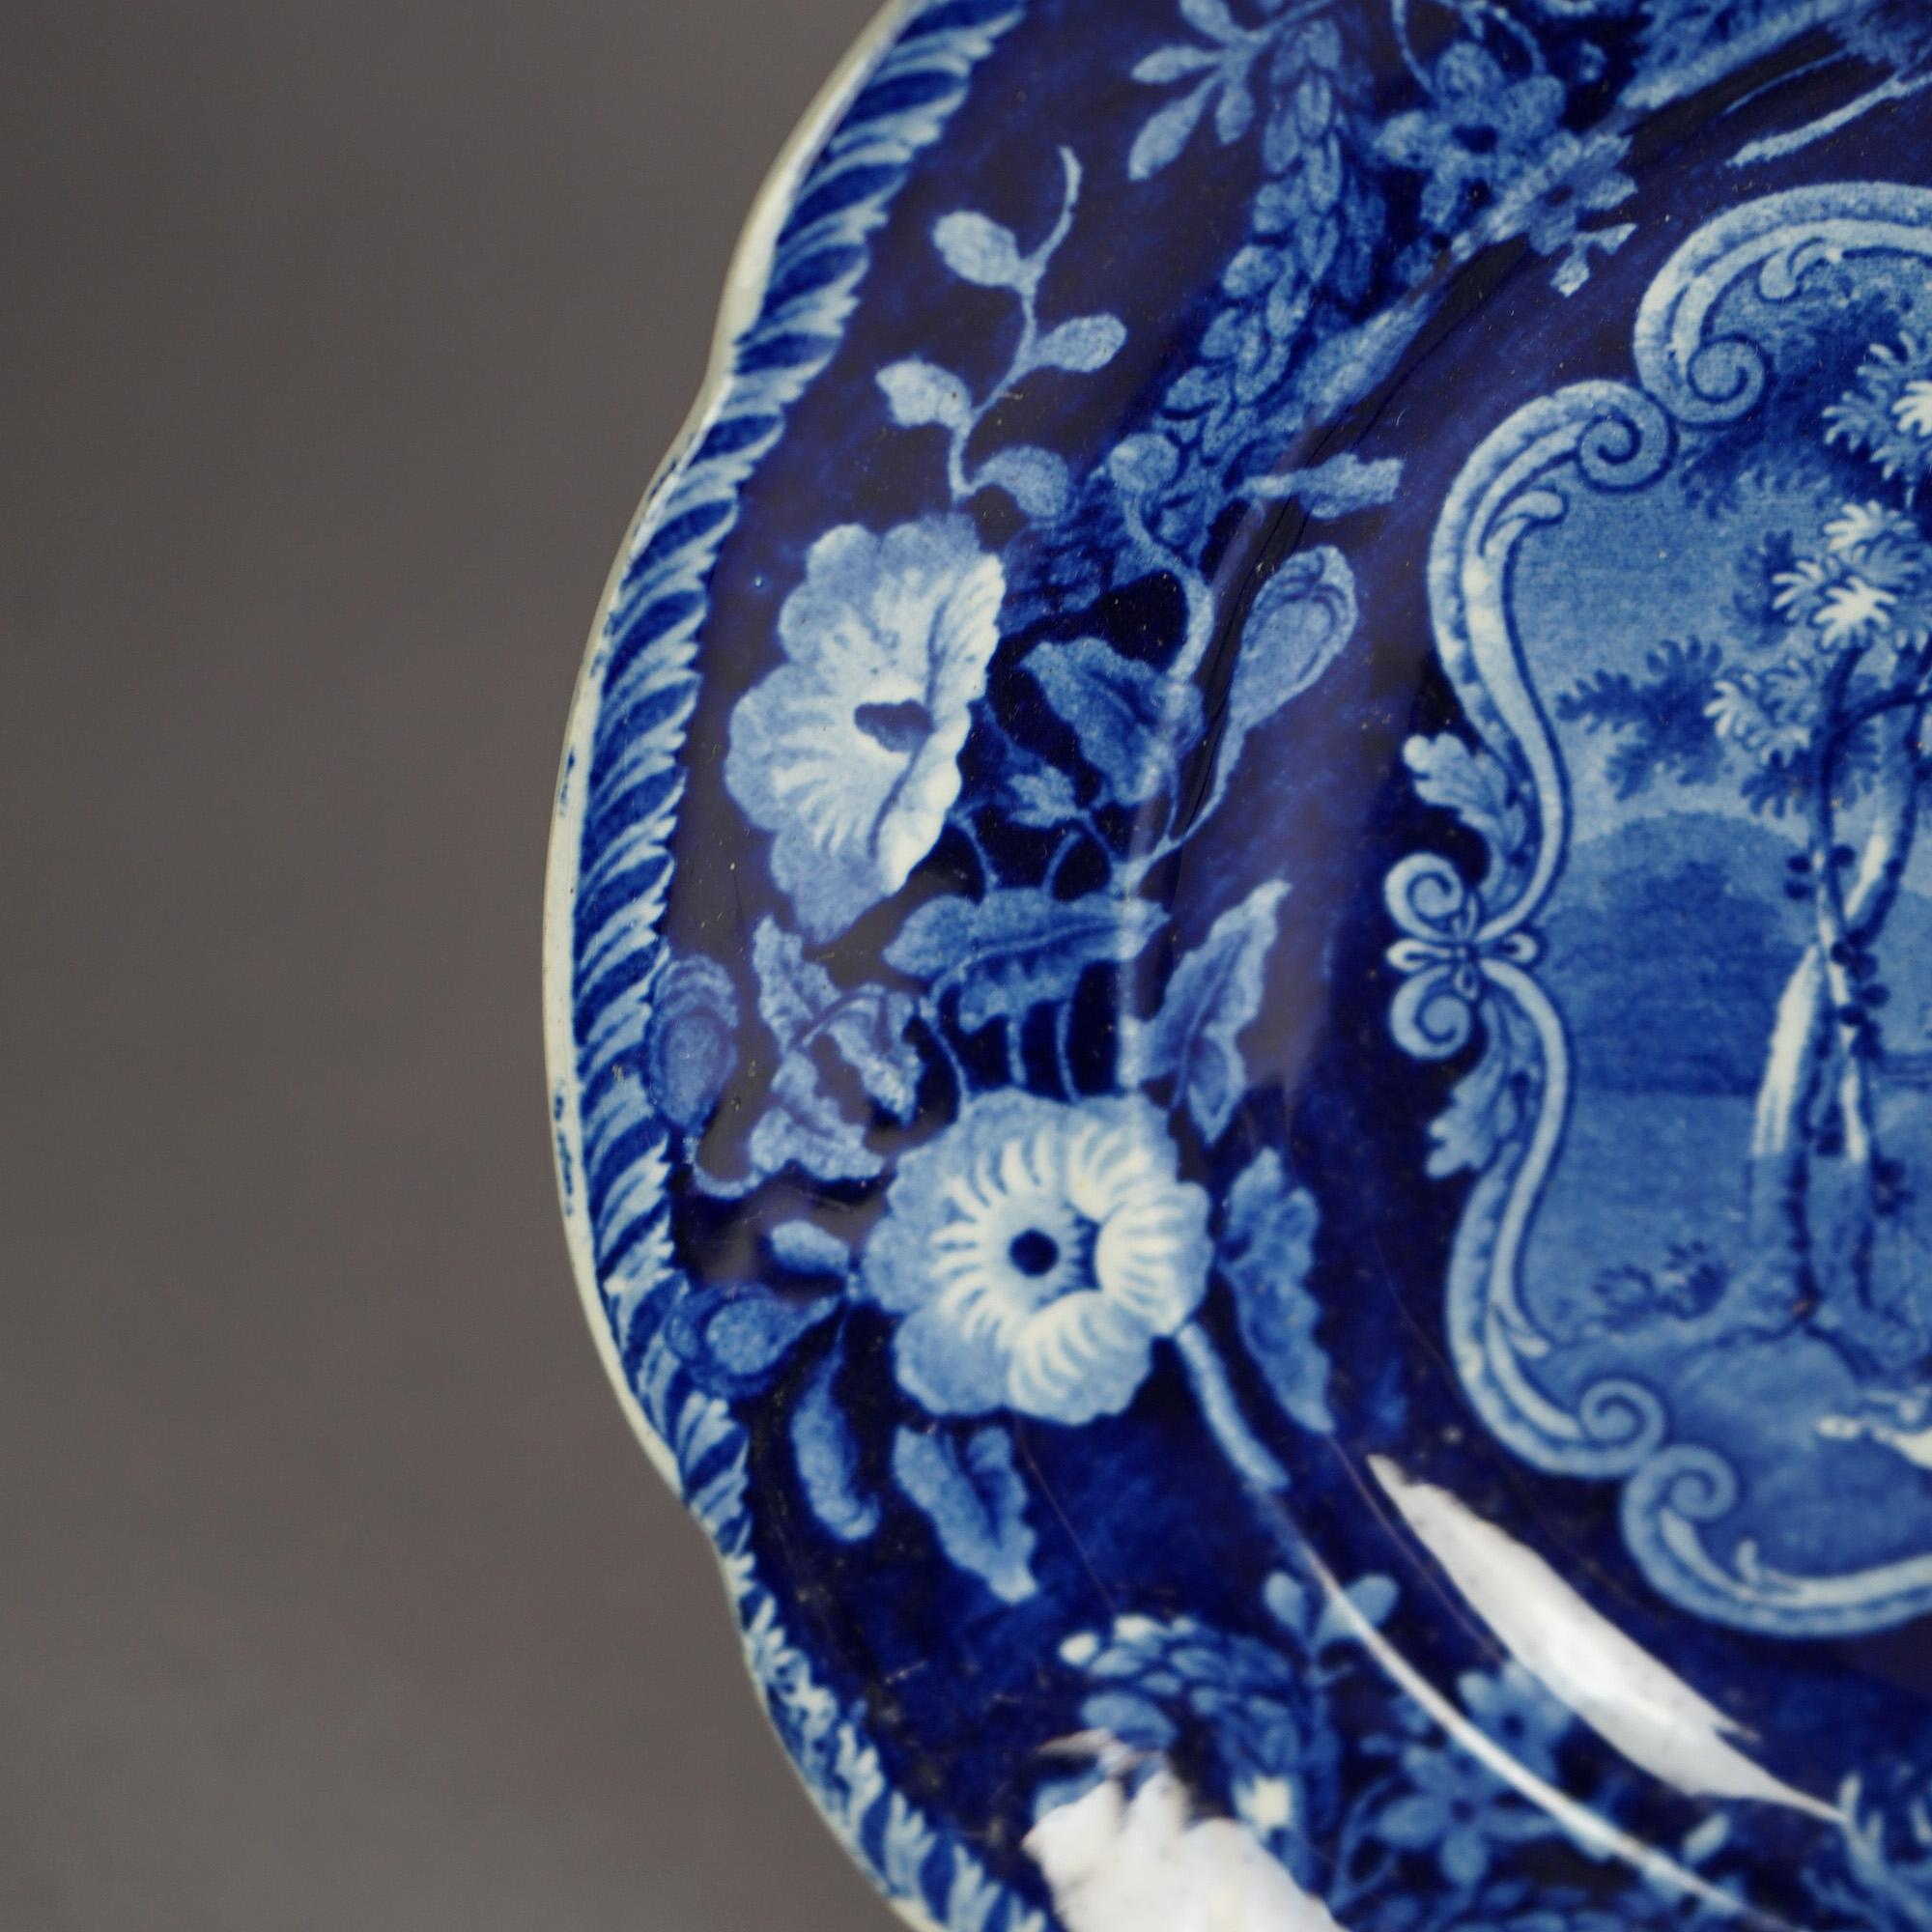 19th Century Five Antique Staffordshire Pottery Flow Blue Plates with Hunt Scènes 19th C